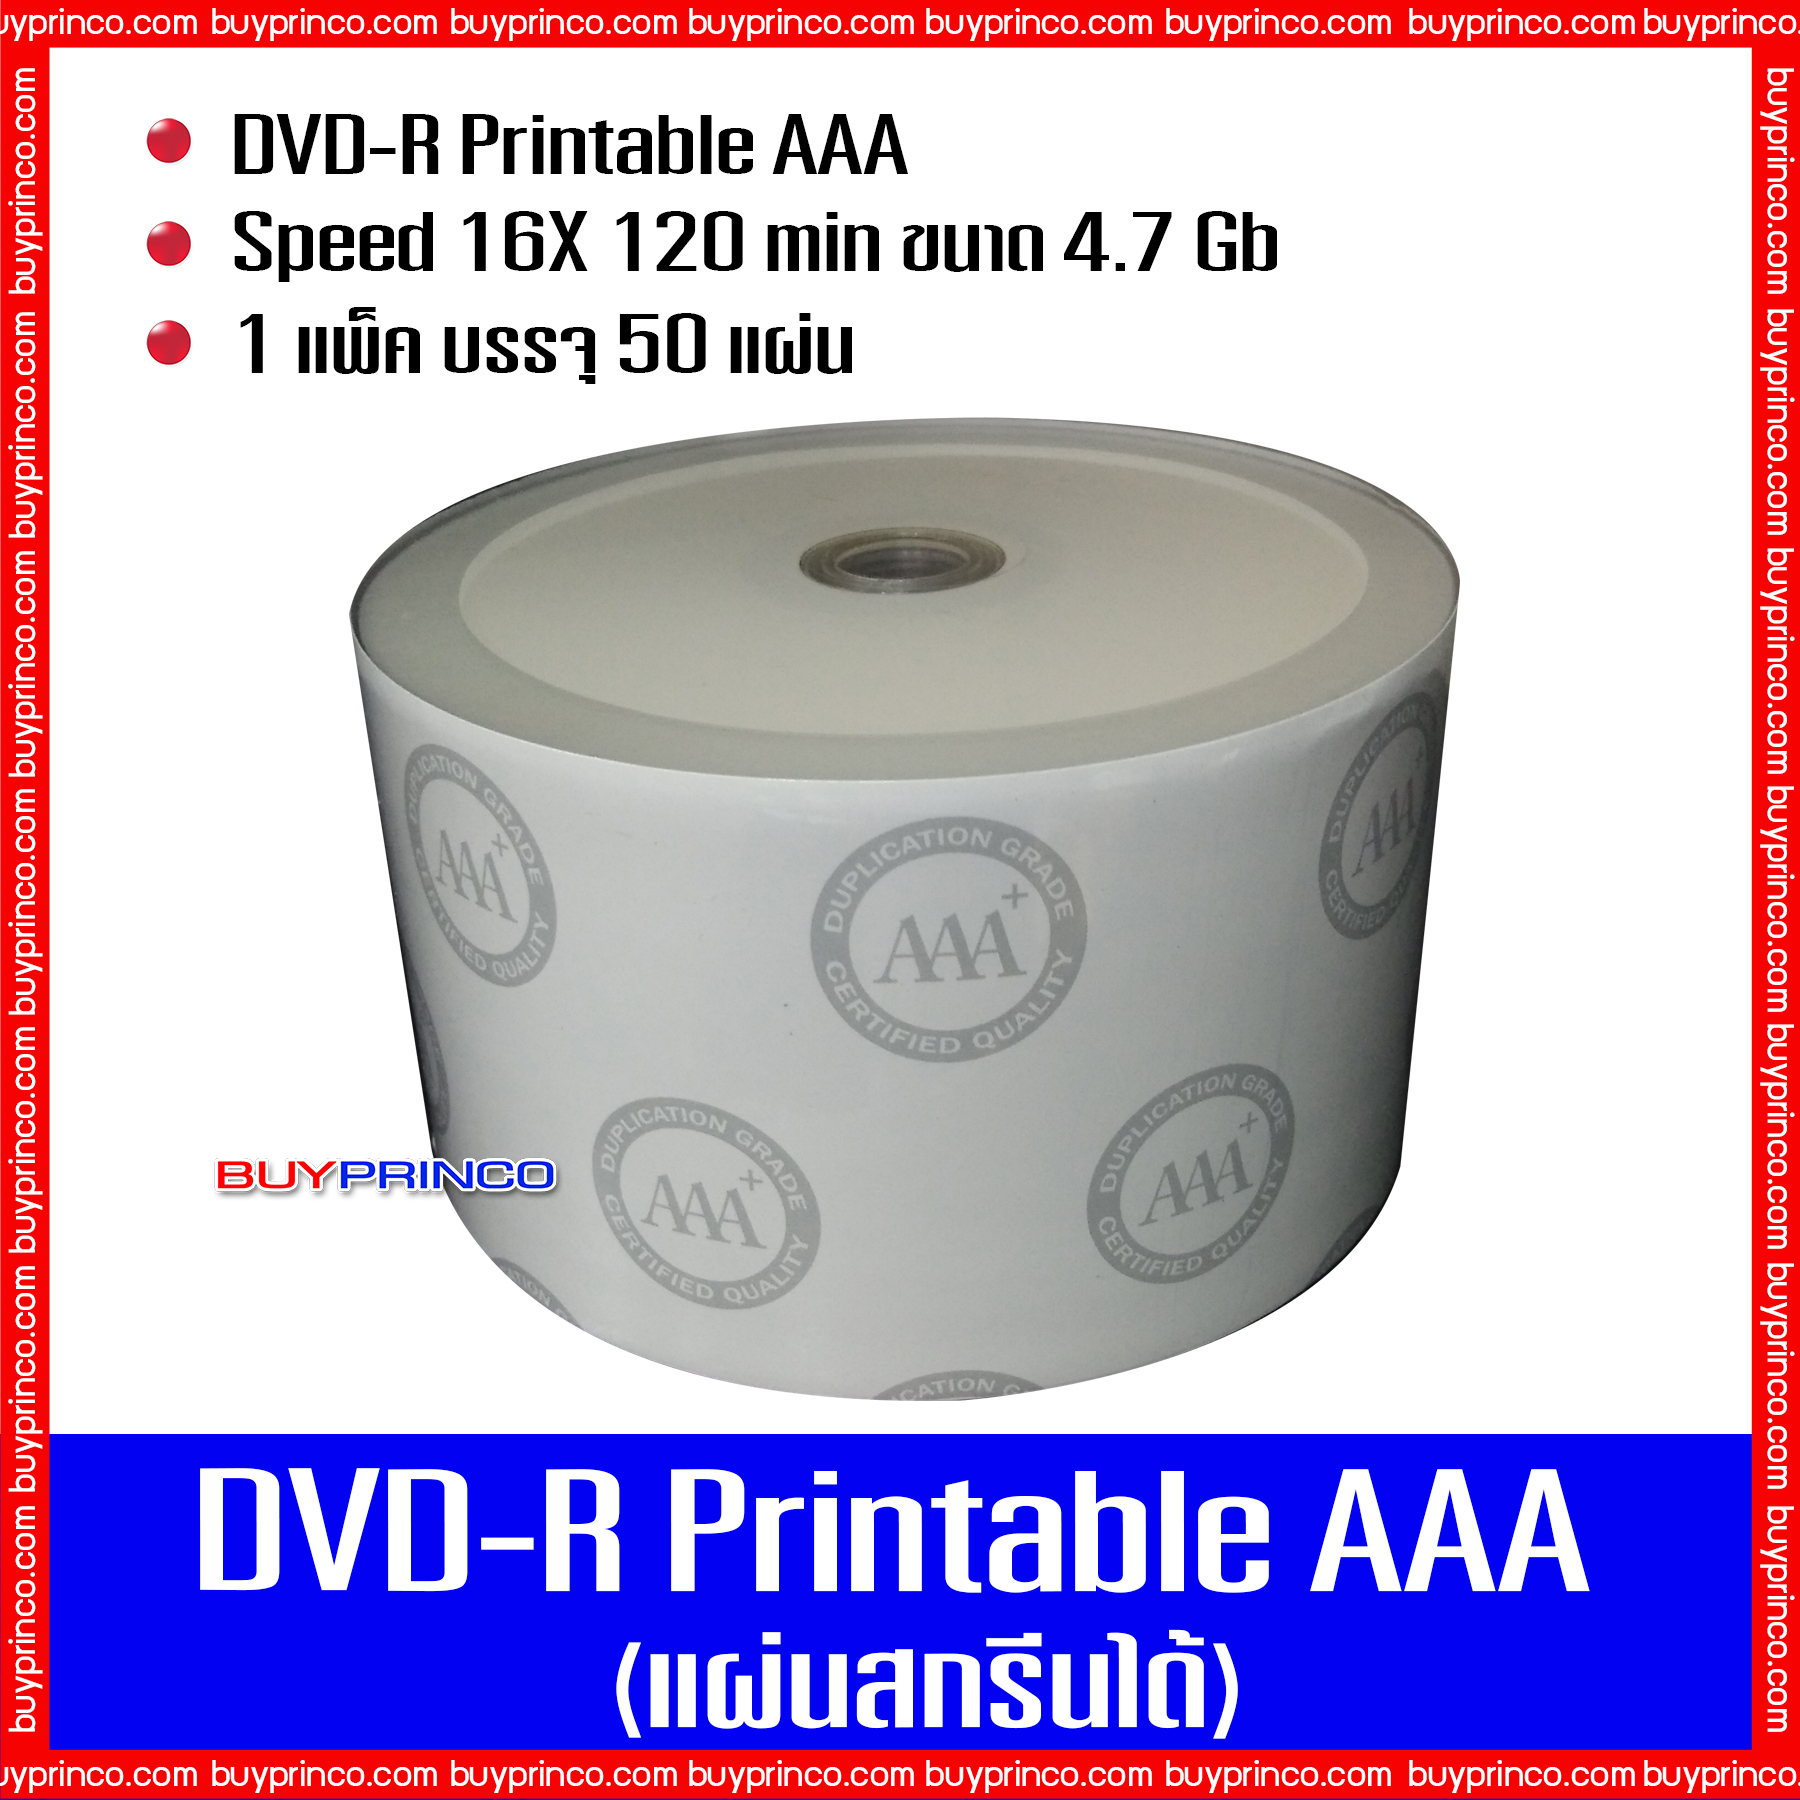 รูปภาพเพิ่มเติมเกี่ยวกับ แผ่นดีวีดี เอเอเอ DVD R Printable AAA (แผ่นดีวีดีสกรีนได้)